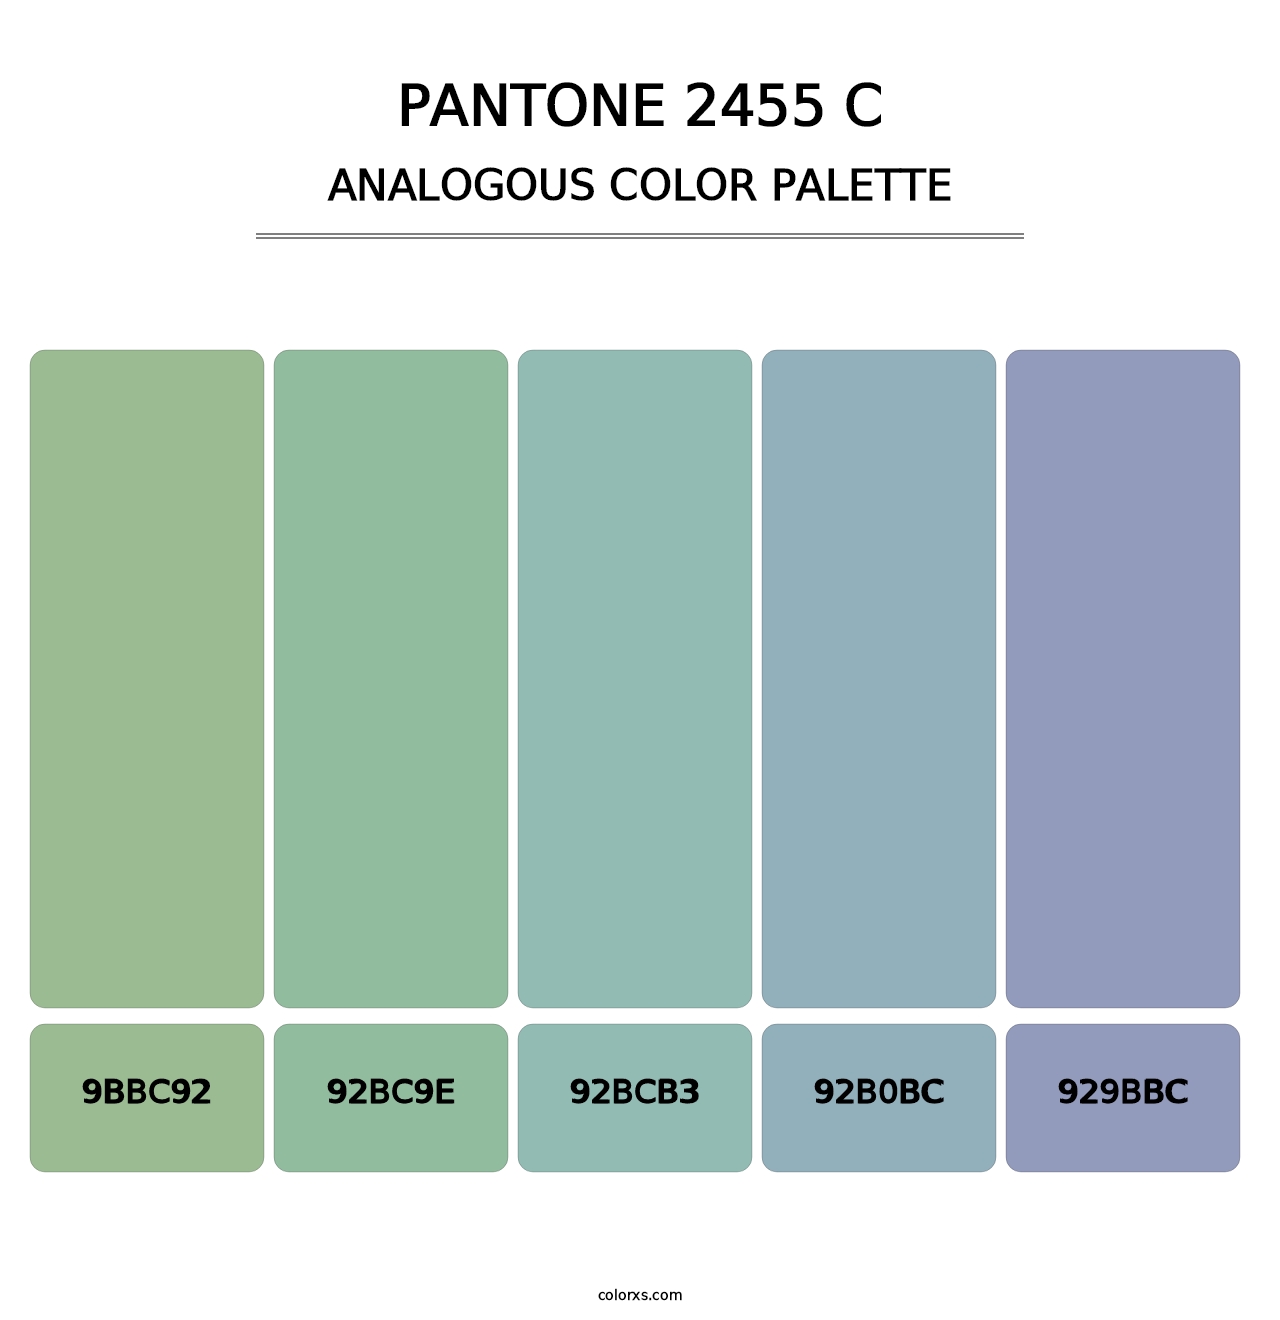 PANTONE 2455 C - Analogous Color Palette